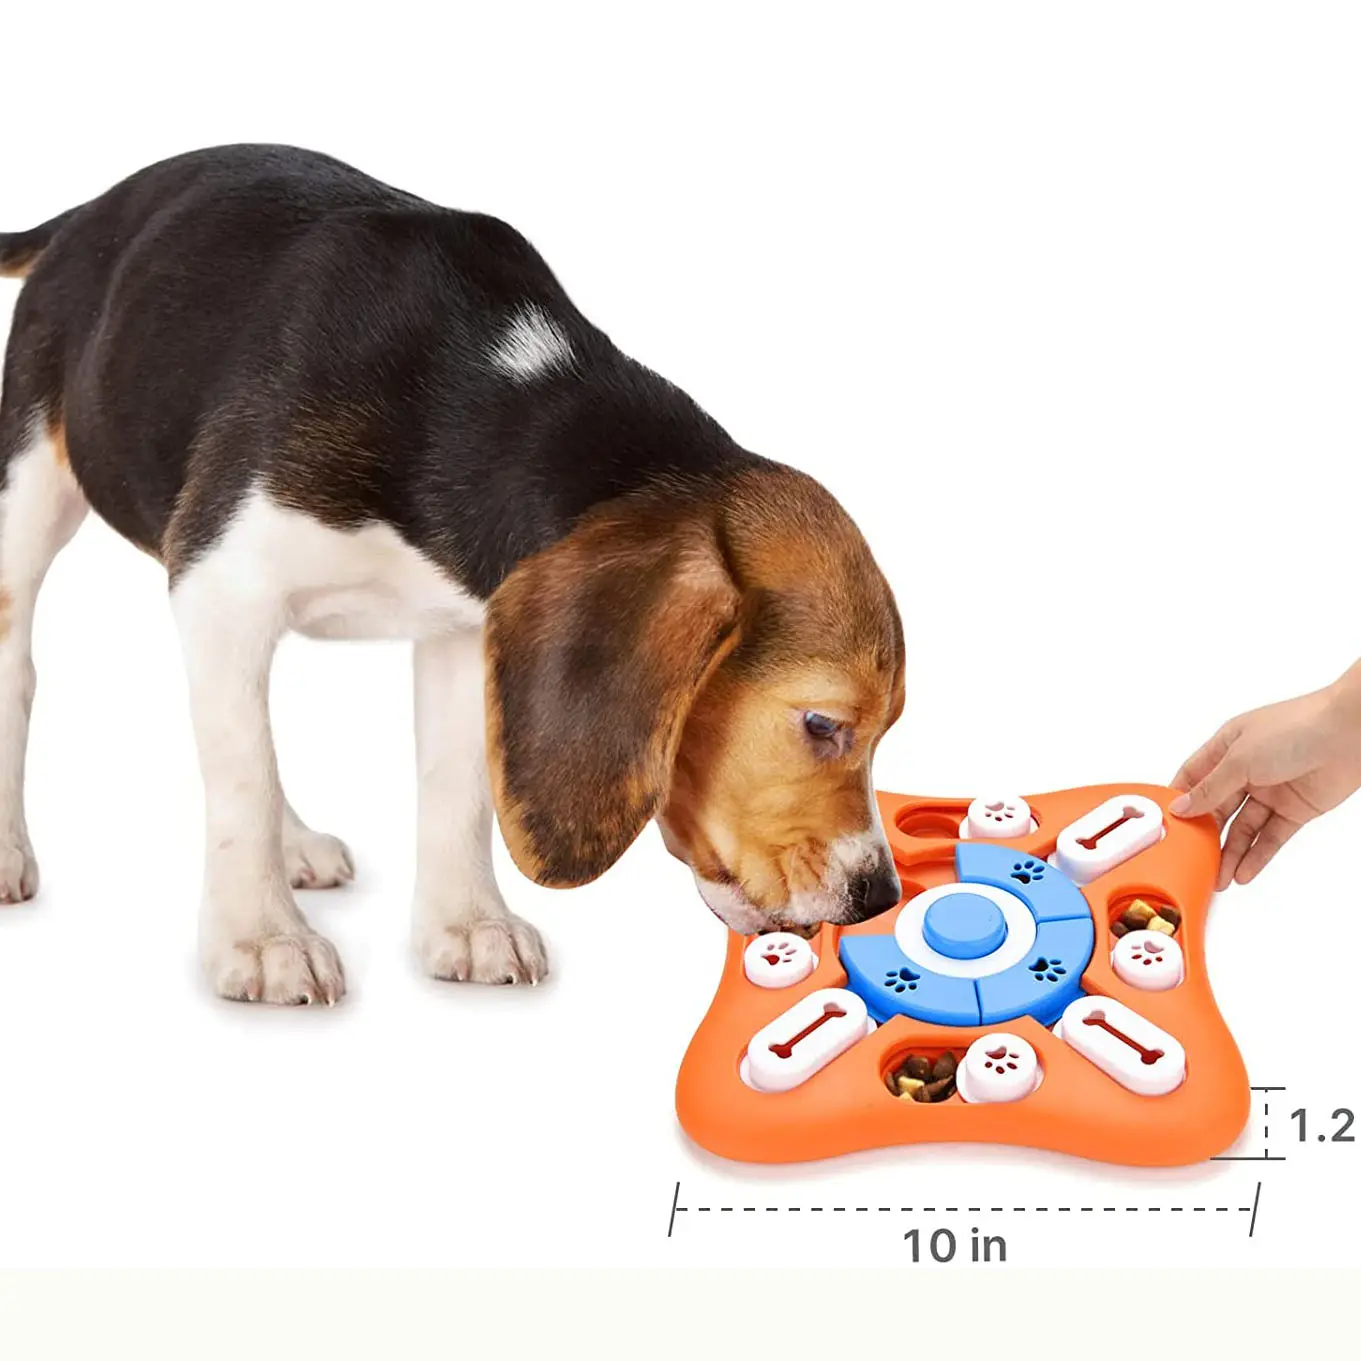 कस्टम लक्जरी अविनाशी चीख़ मनोरंजक इंटरैक्टिव स्मार्ट पिल्लों के लिए पहेली खेल वृद्धि बुद्धि पालतू कुत्ते के खिलौने